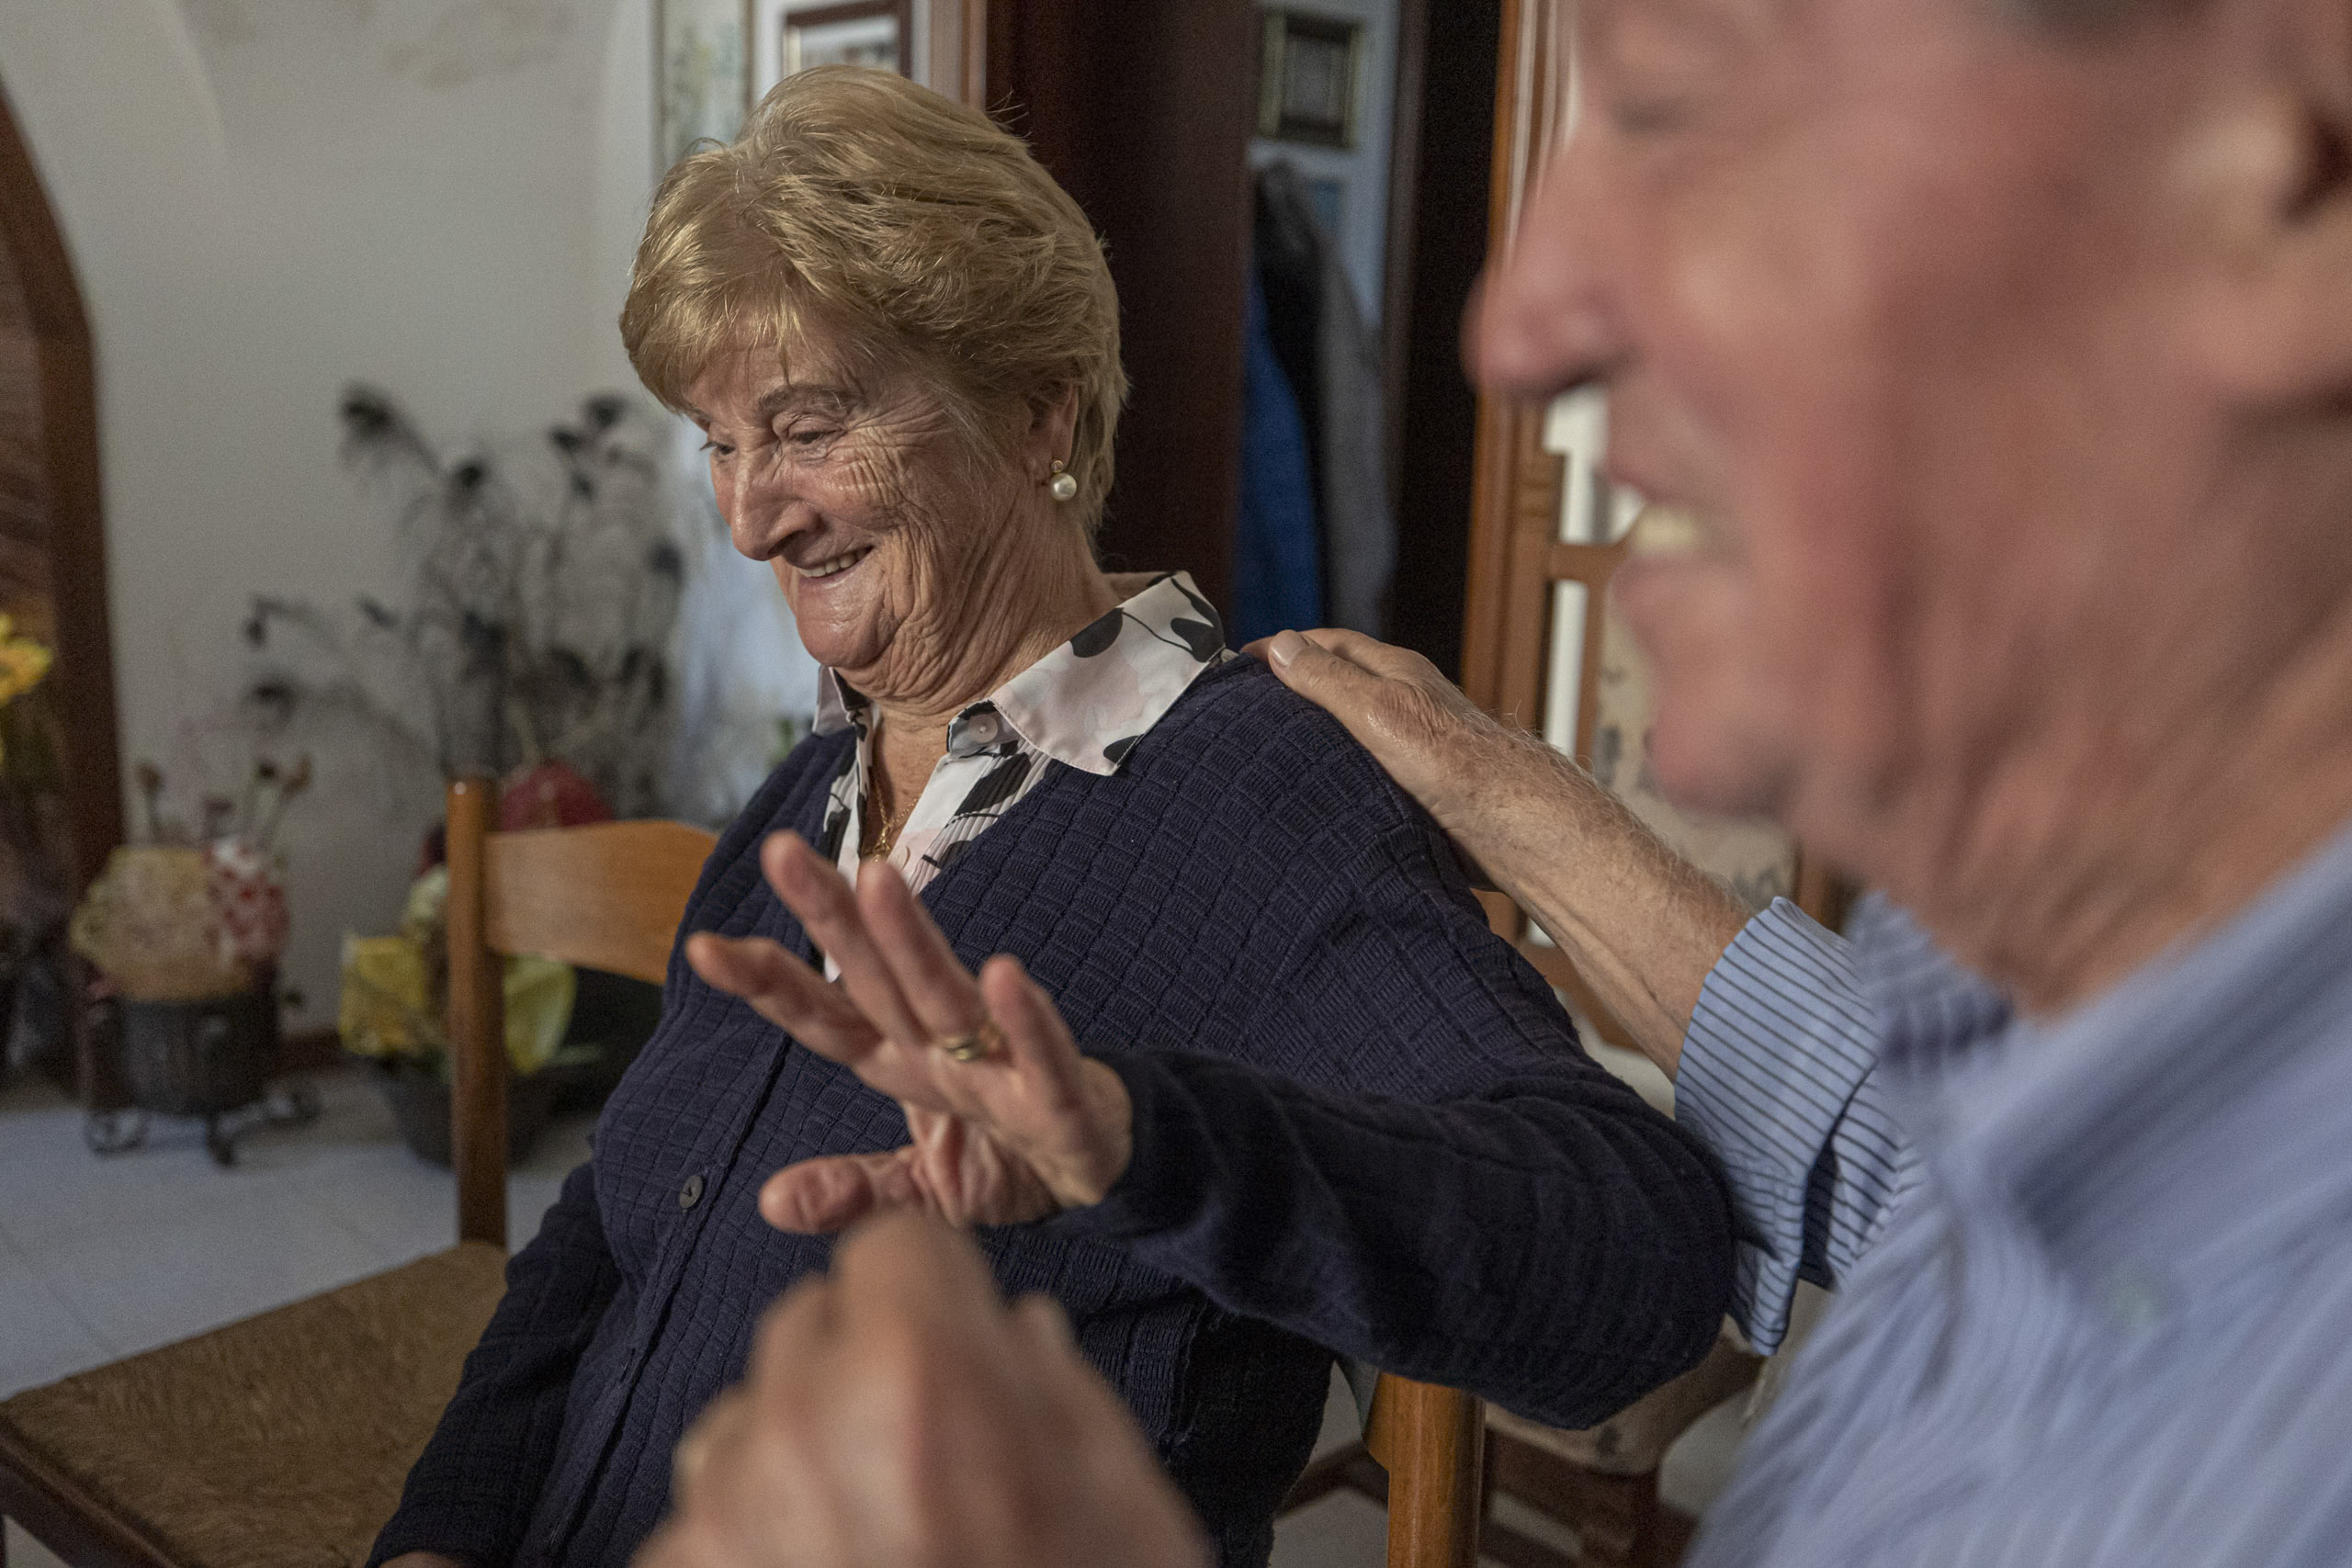 Ein fröhliches älteres Paar teilt einen unbeschwerten Moment. Die Frau lächelt strahlend, während sie mit dem teilweise sichtbaren Mann neben ihr interagiert, der lacht. © Fotografie Tomas Rodriguez